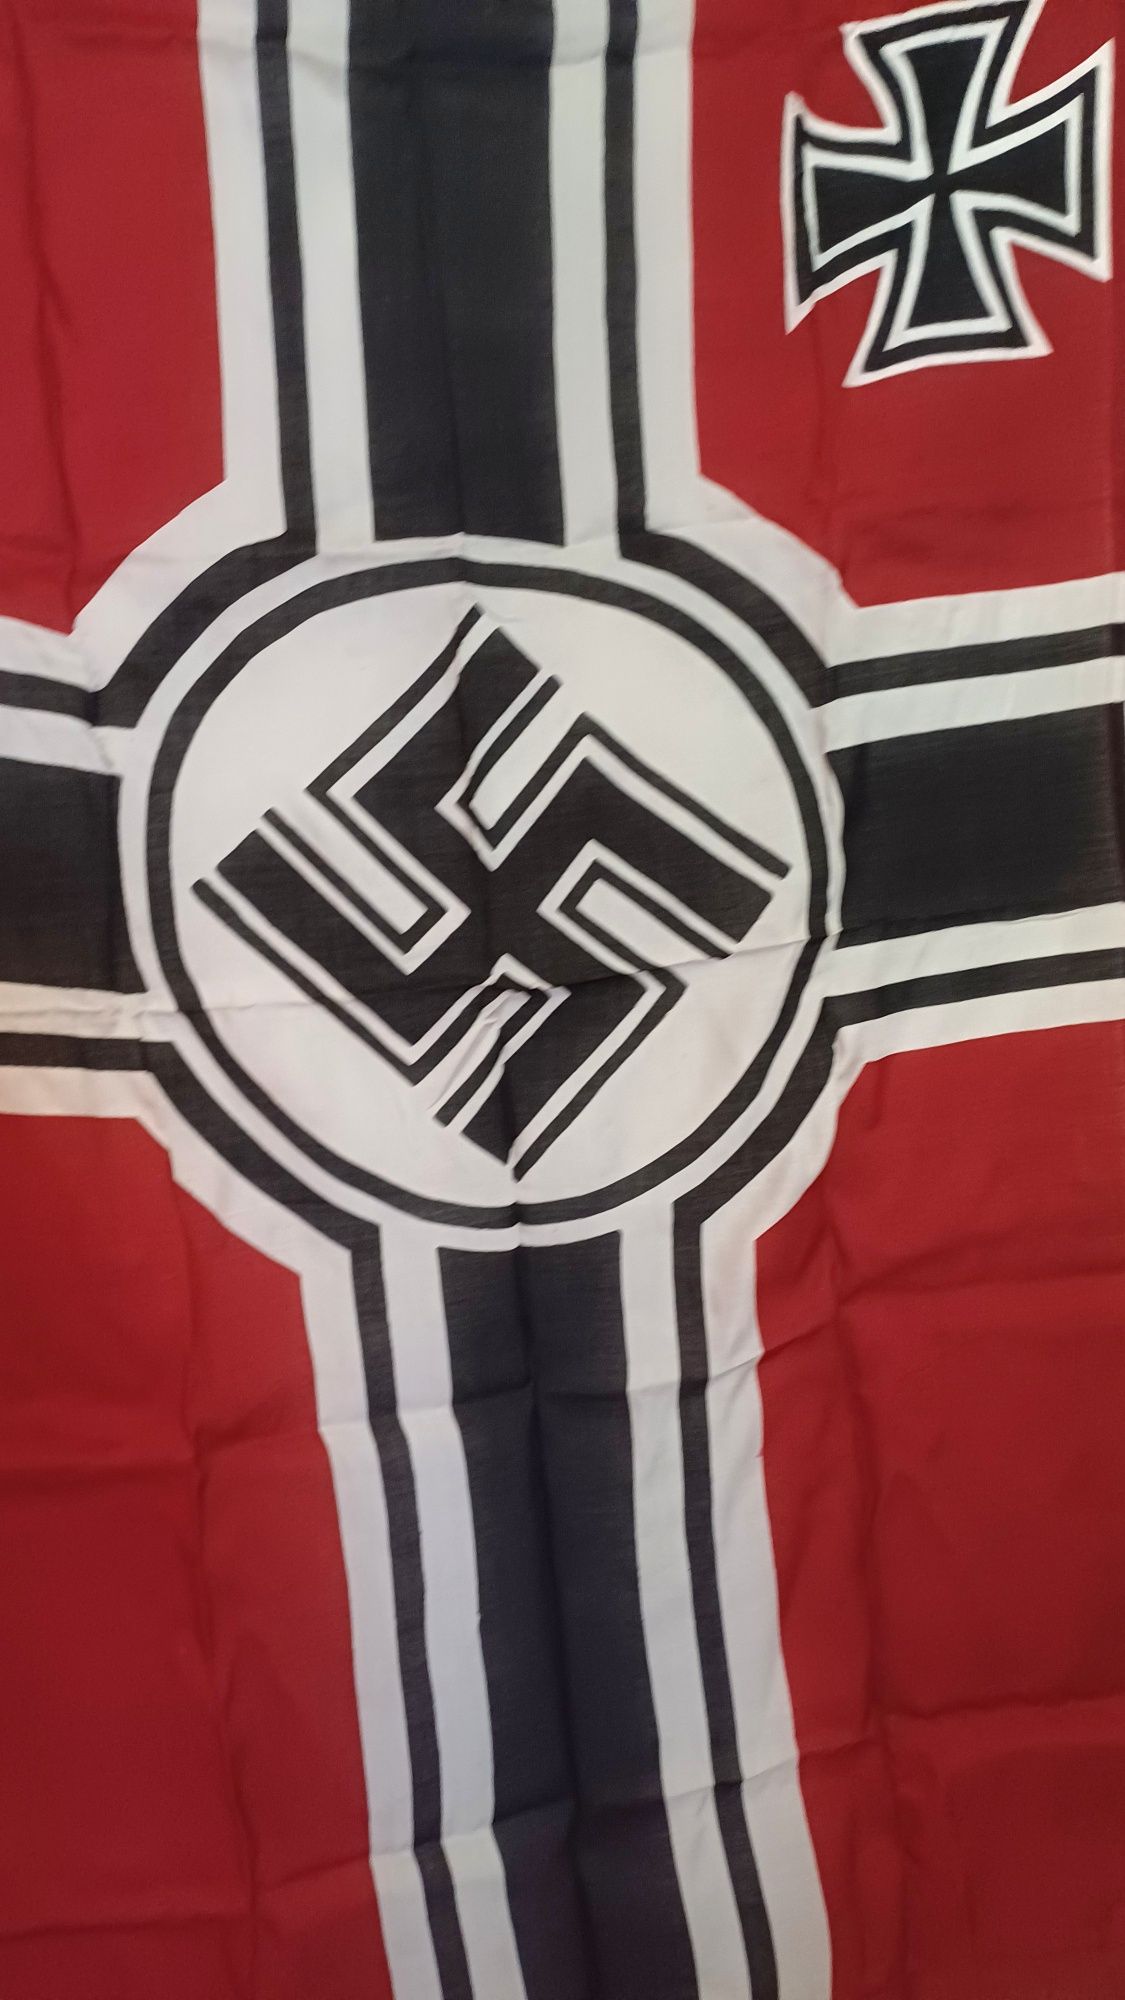 PROMOÇÃO--Bandeira KRIEGSMARINE algodão NOVA Alemanha nazi-suástica